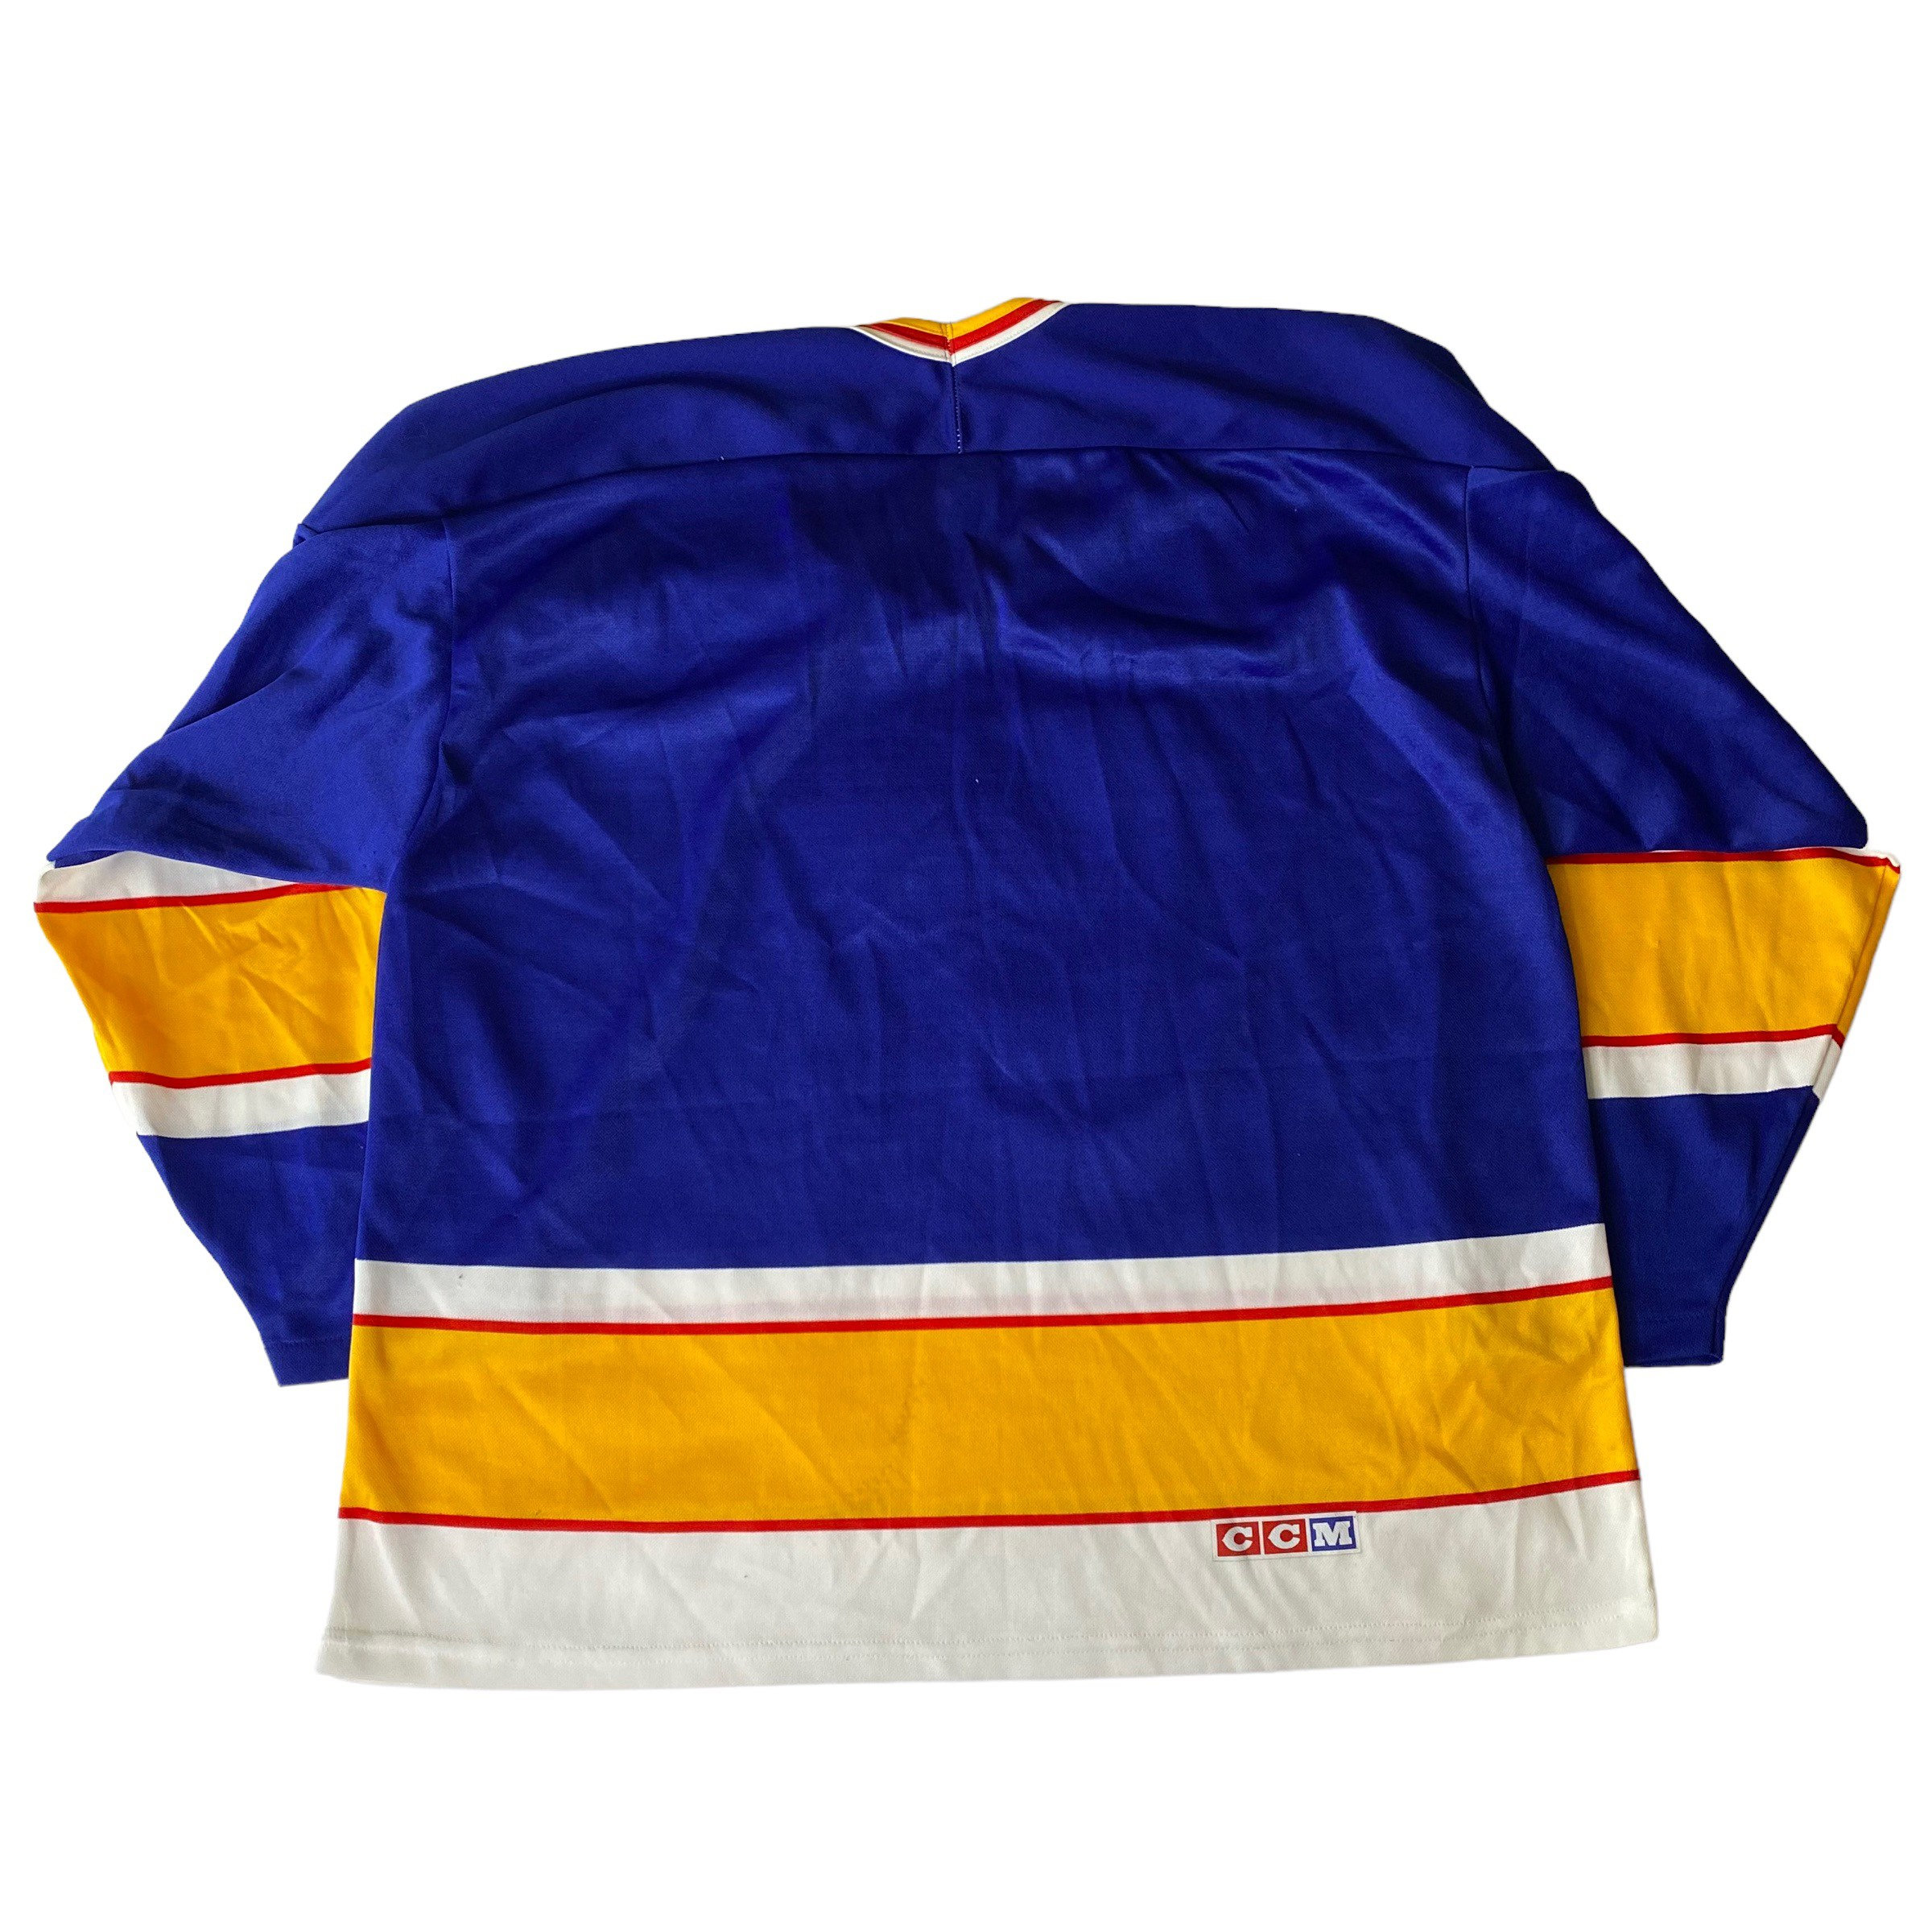 CCM St. Louis Blues NHL Hockey Jersey Man XL Blue Canada Sewn 